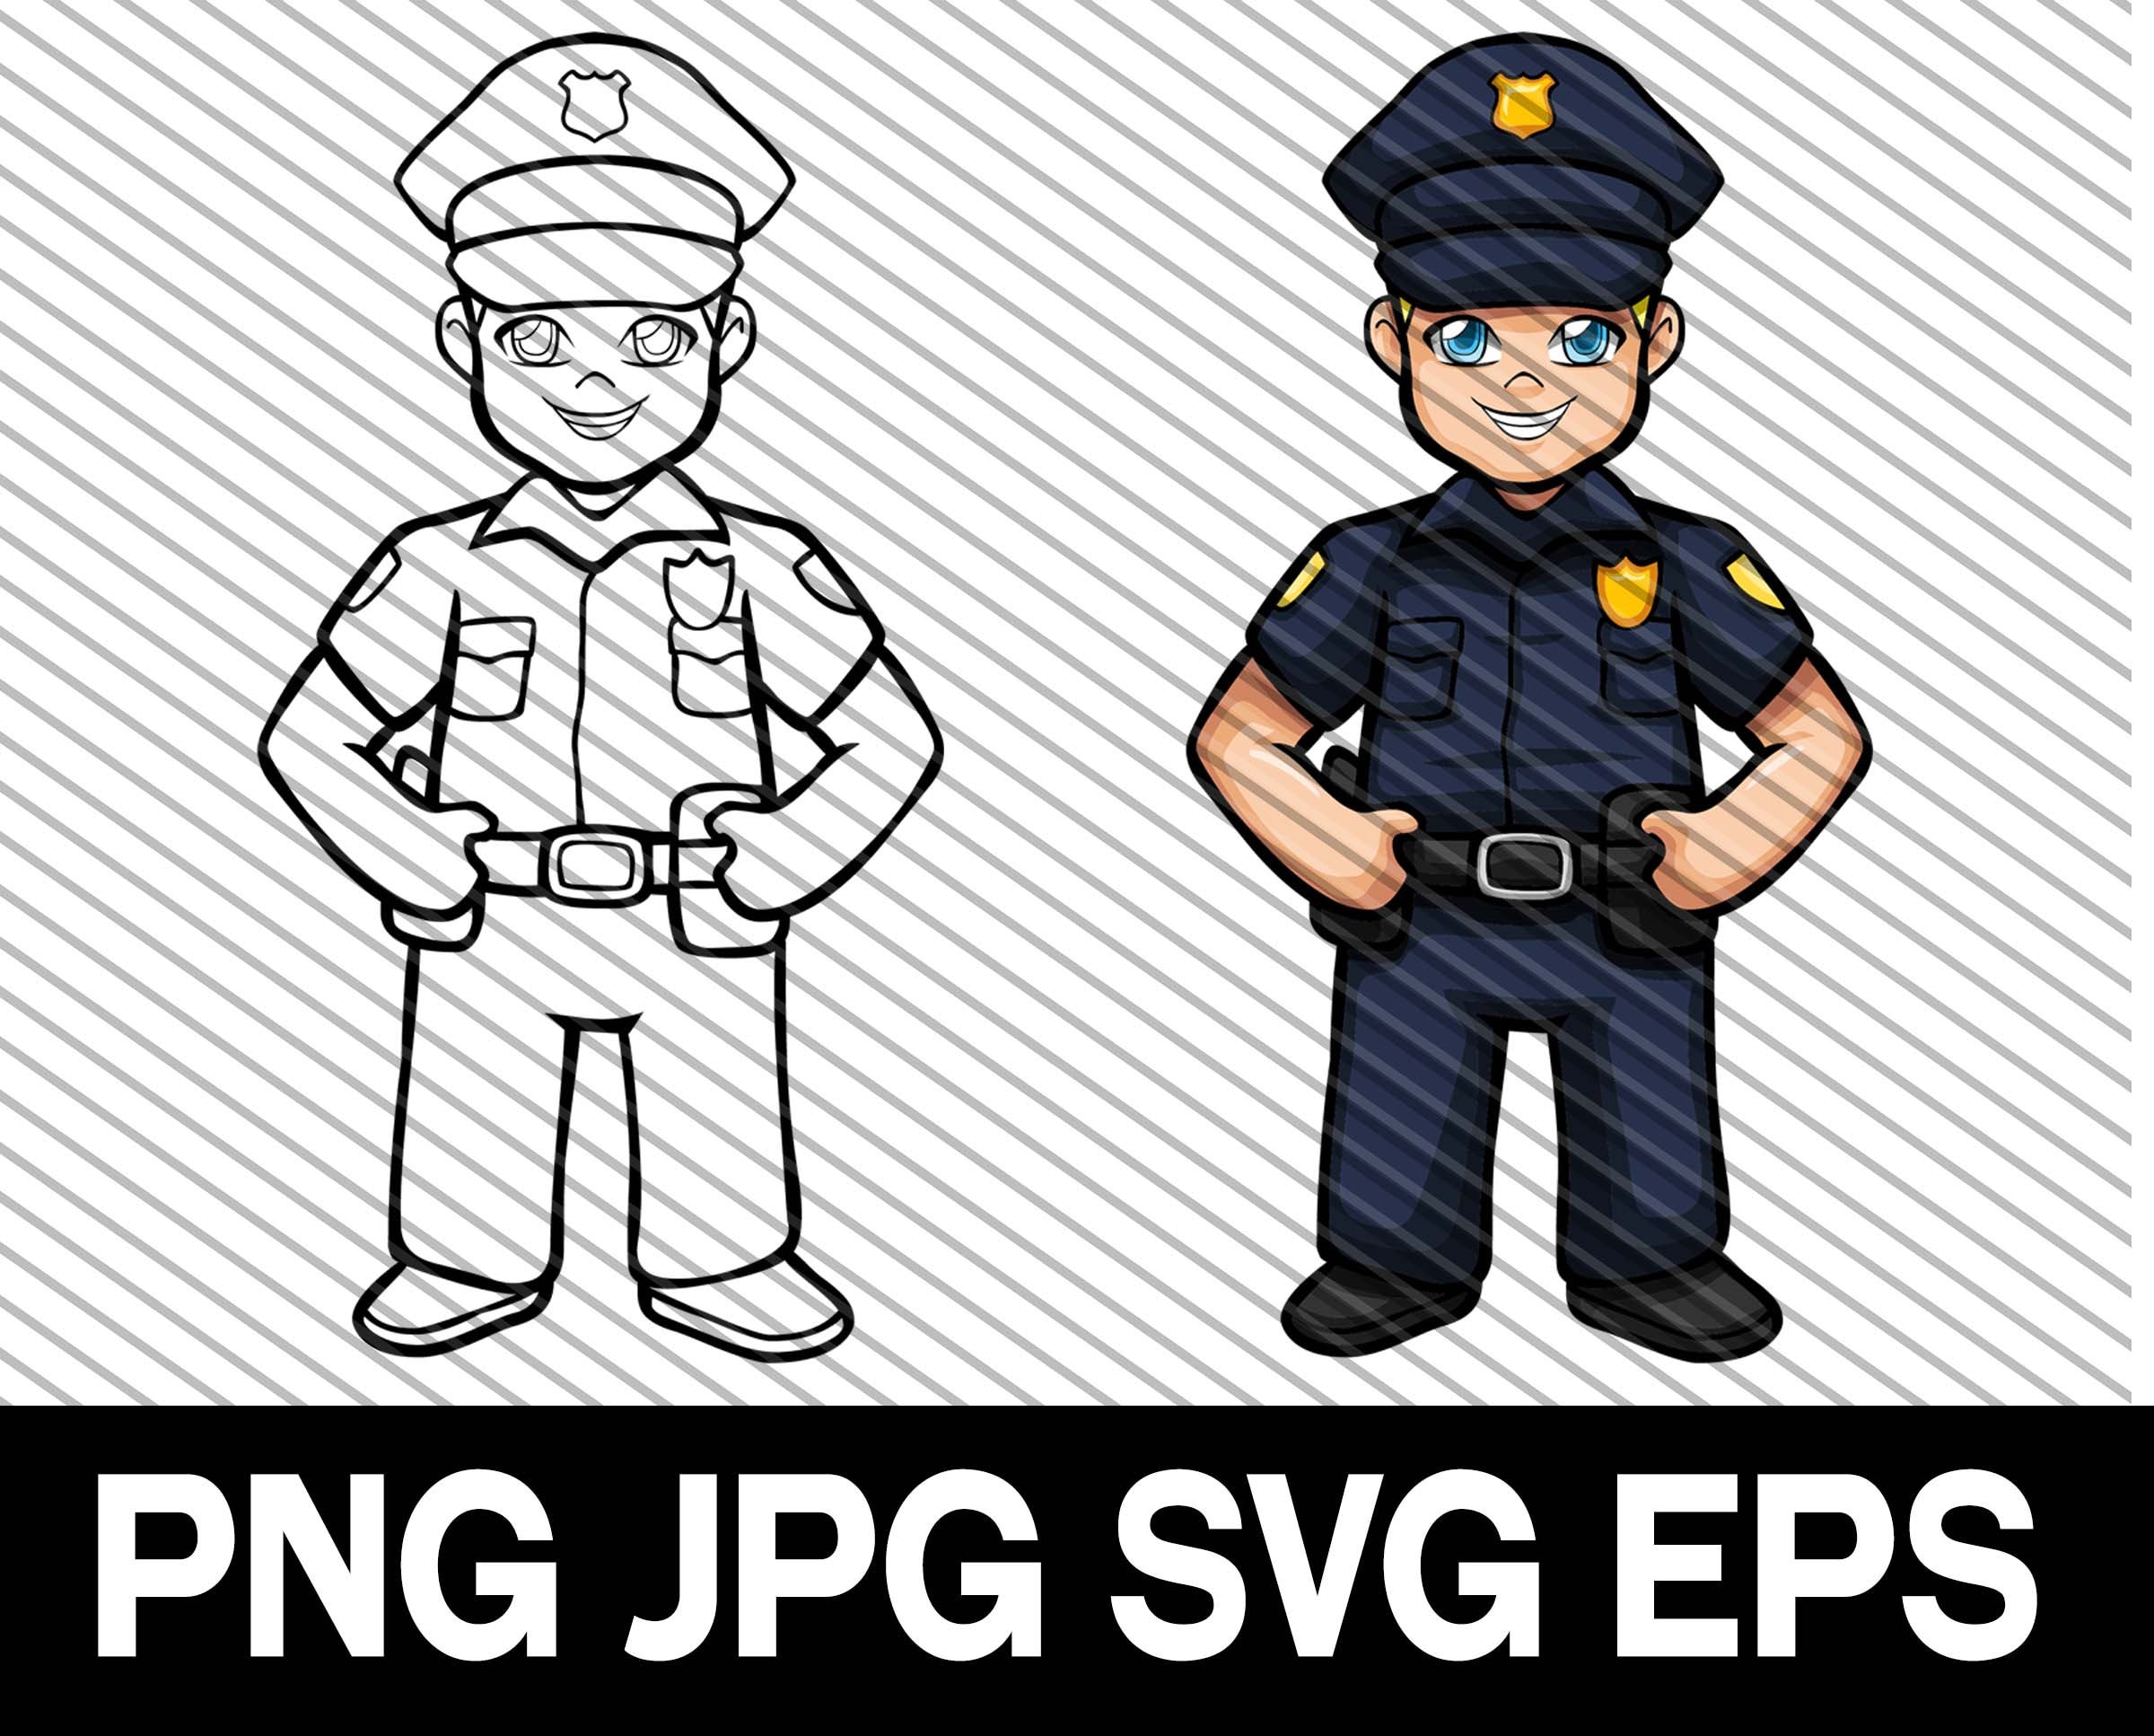 Polizei, PNG, ClipArt, SVG, DXF, geschnittene Datei, Polizist,  Polizeiuniform